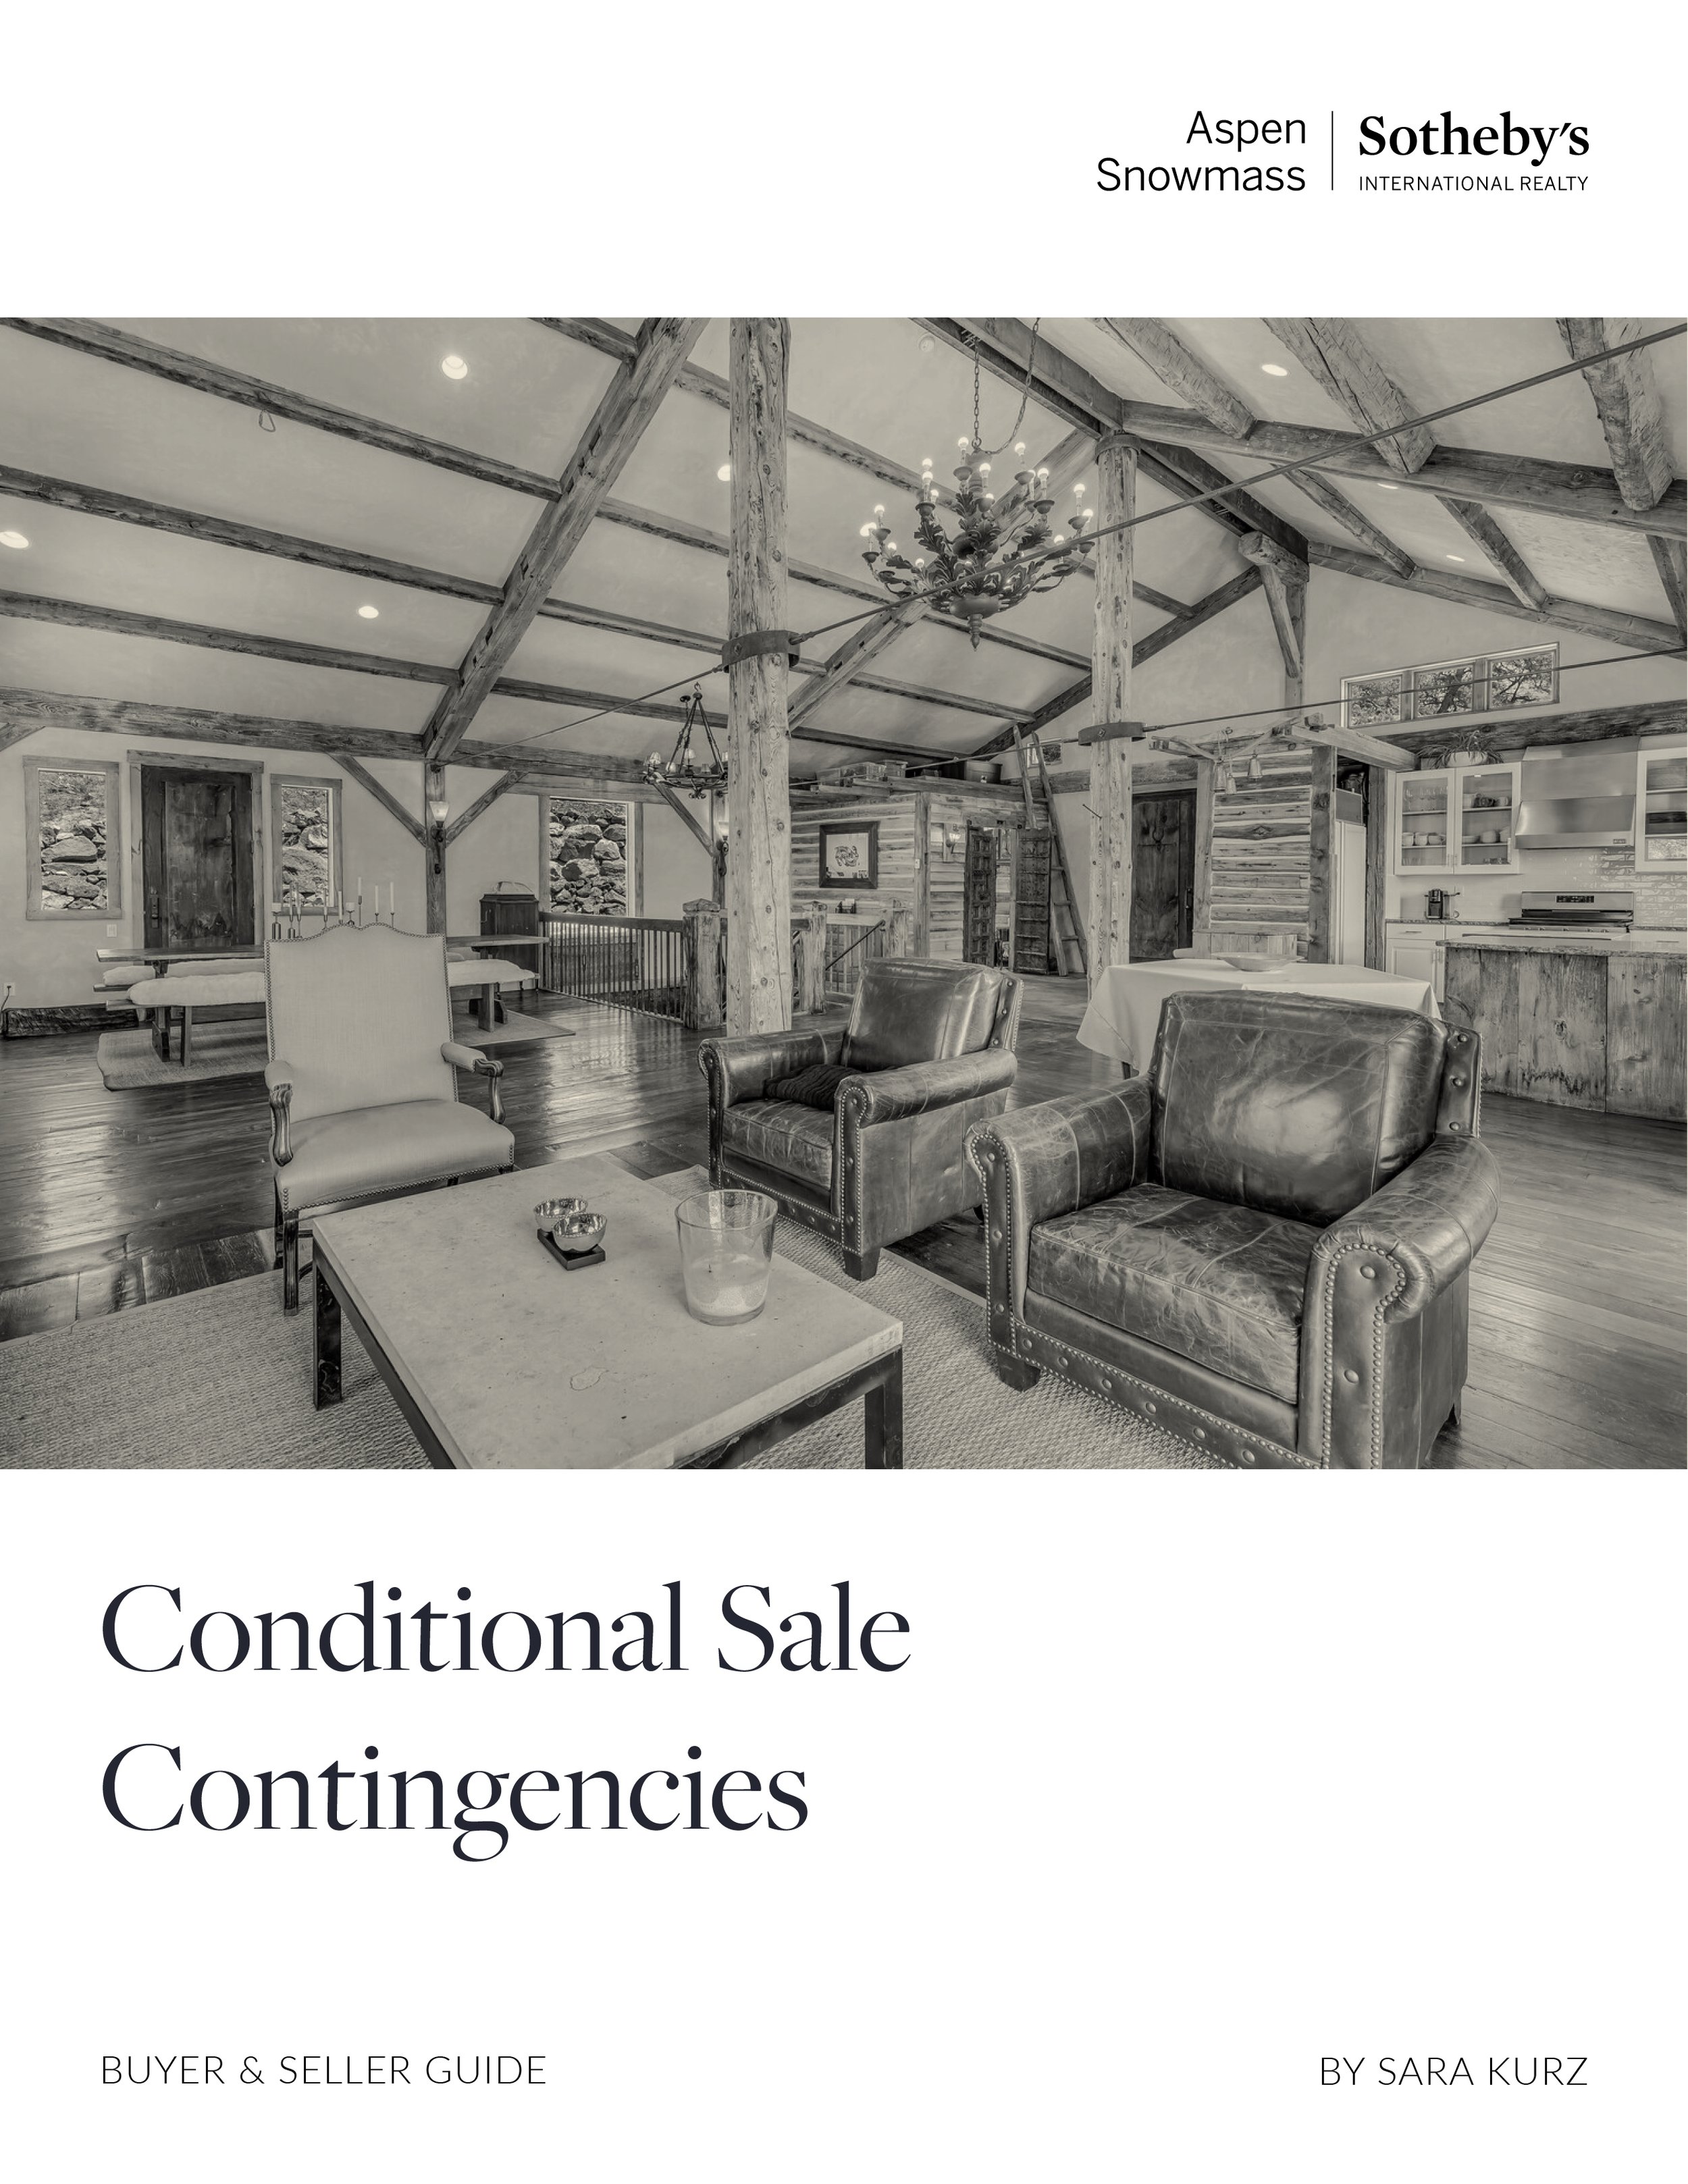 Conditional Sales Article Nov 2022.jpg